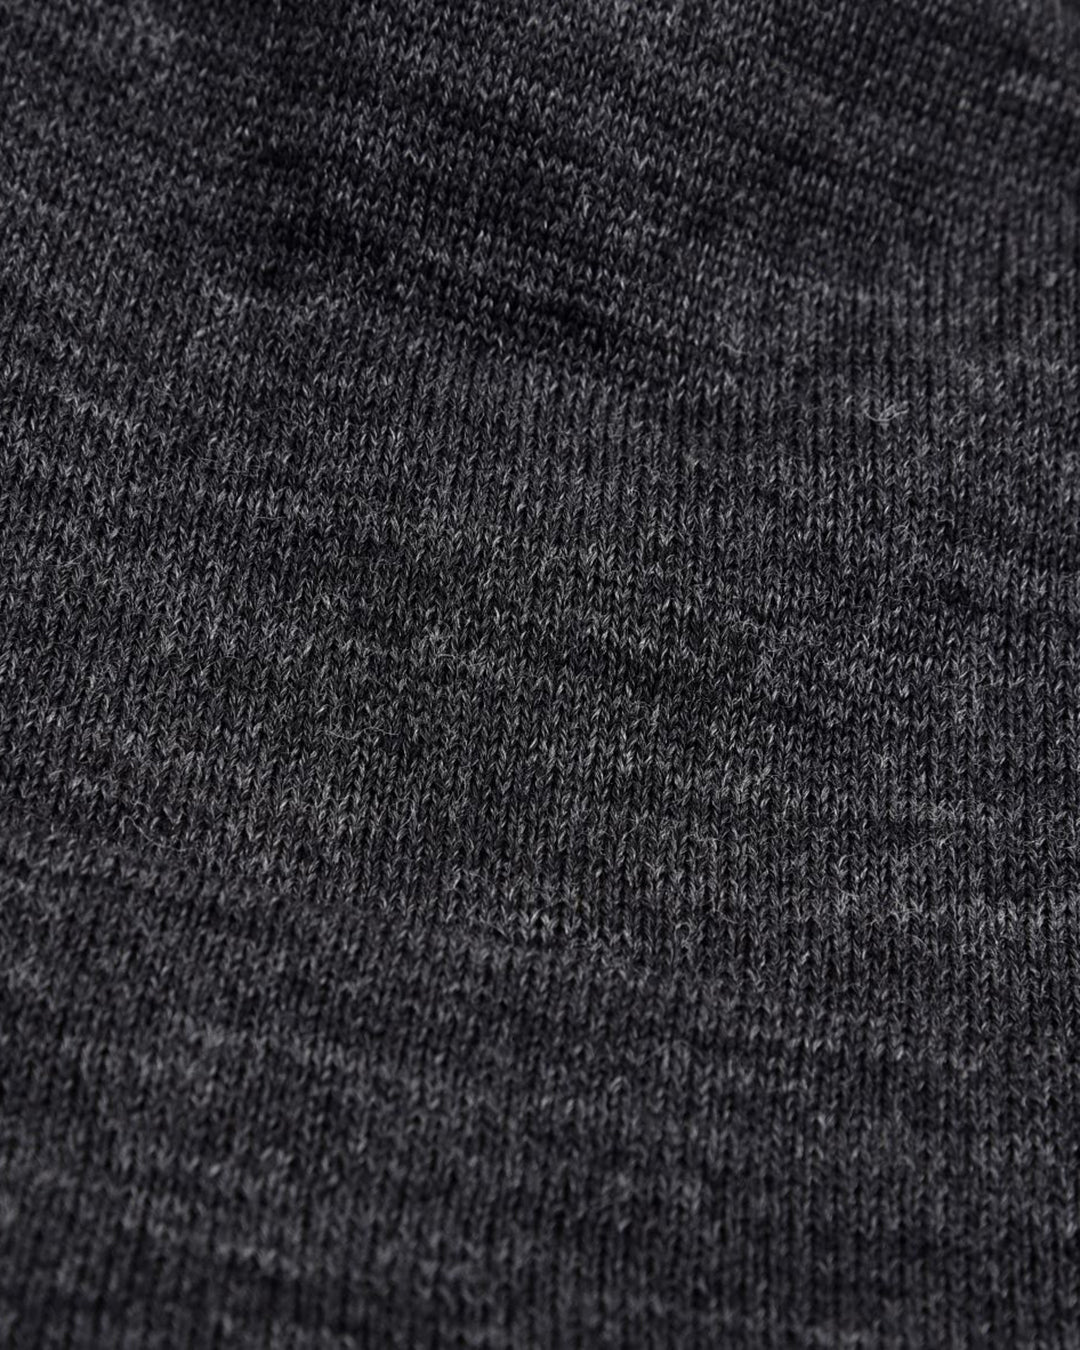 Charcoal Grey/Lt Grey Wool Cap